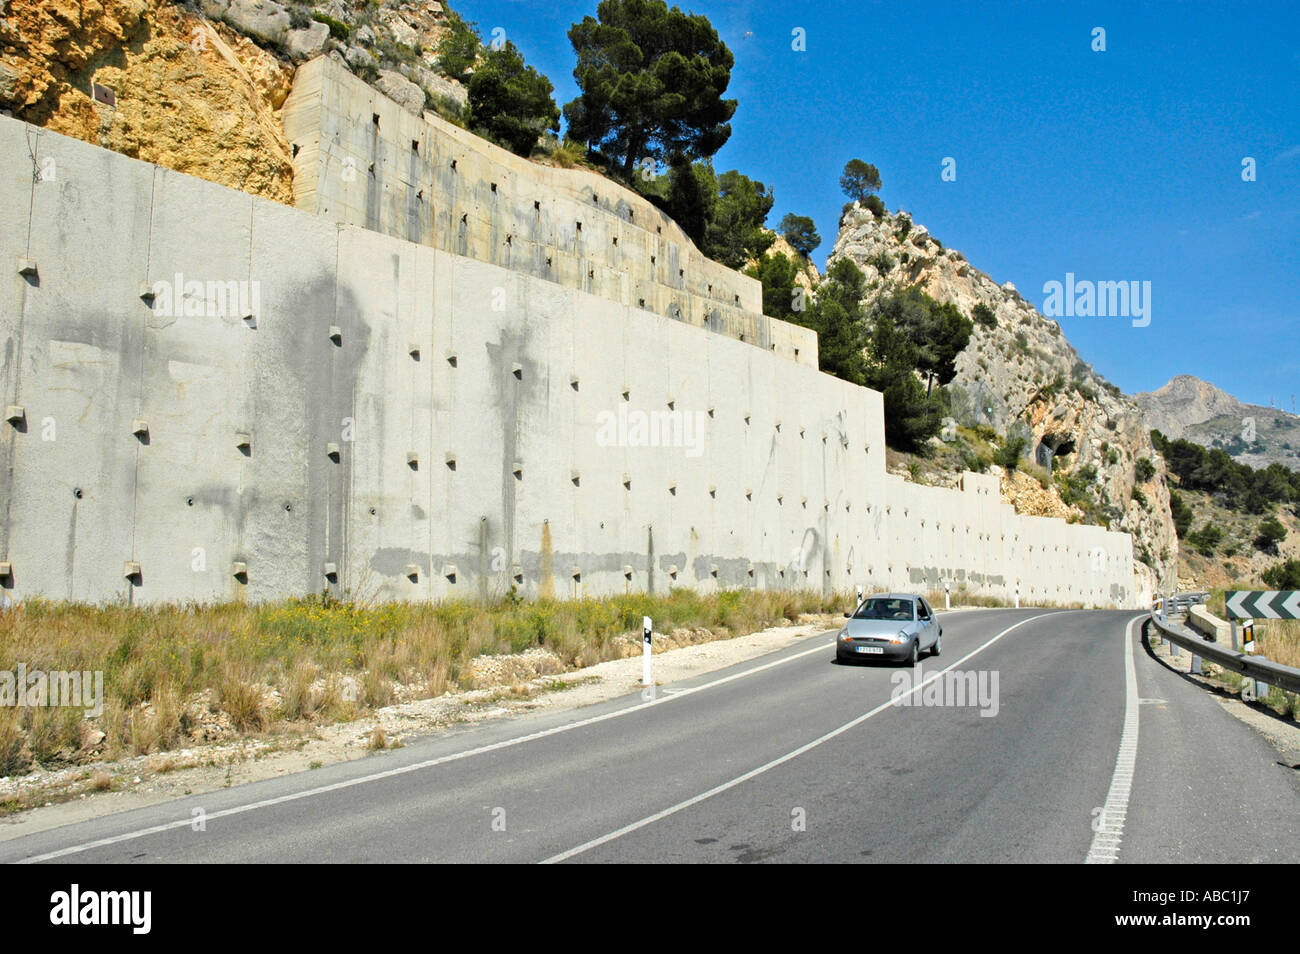 Auto faehrt auf der Kuestenstrasse, Steinmauer, Steinschlag, Bergrutsch, Befestigung, Altea, Costa Blanca, Spanien |Guida auto Foto Stock